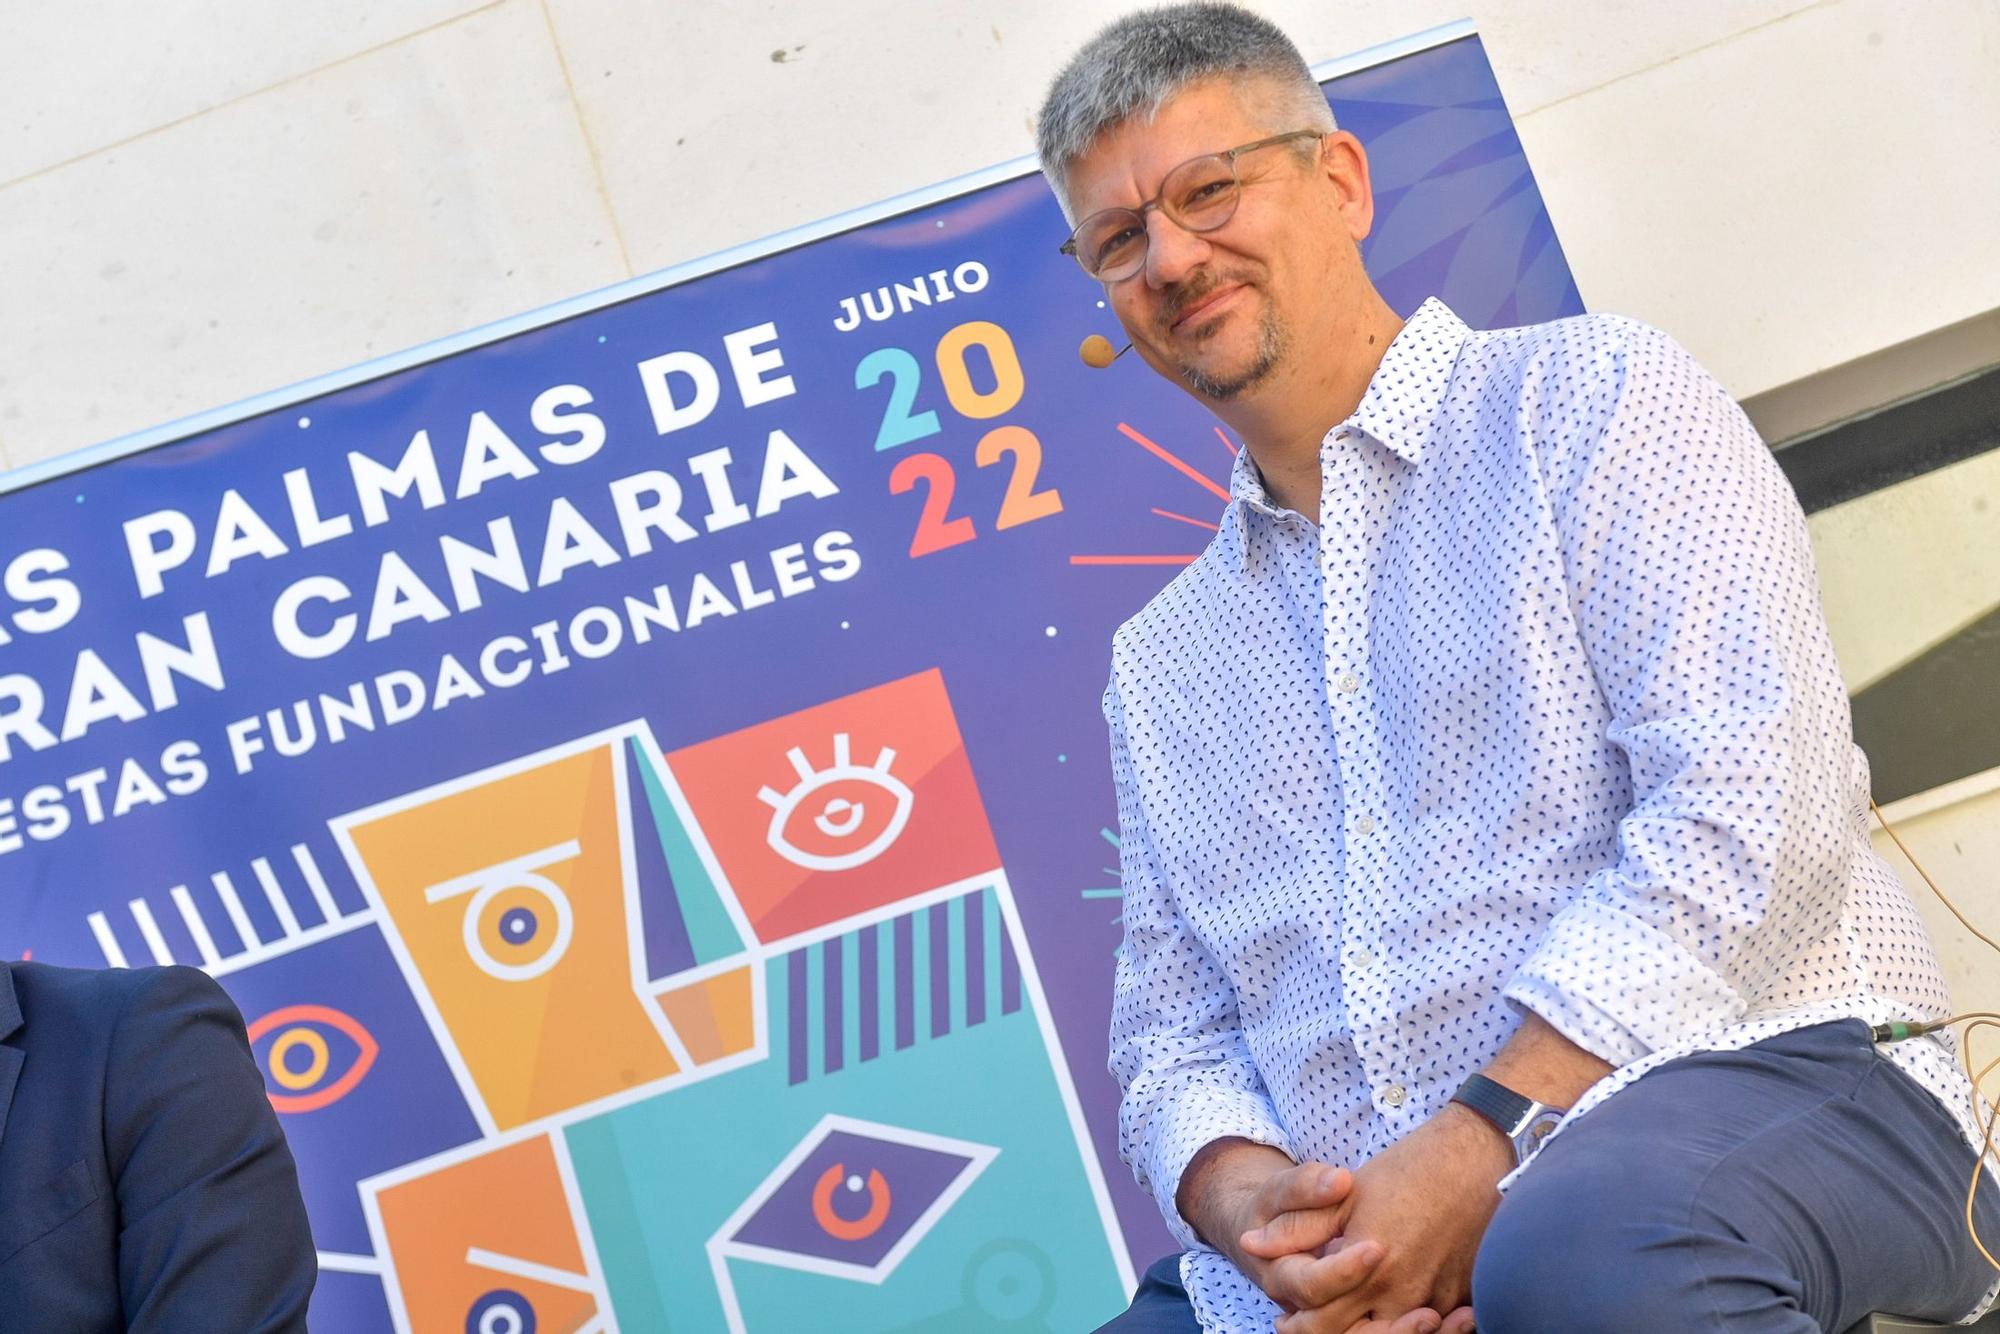 Presentación programa de las Fiestas Fundacionales de Las Palmas de Gran Canaria